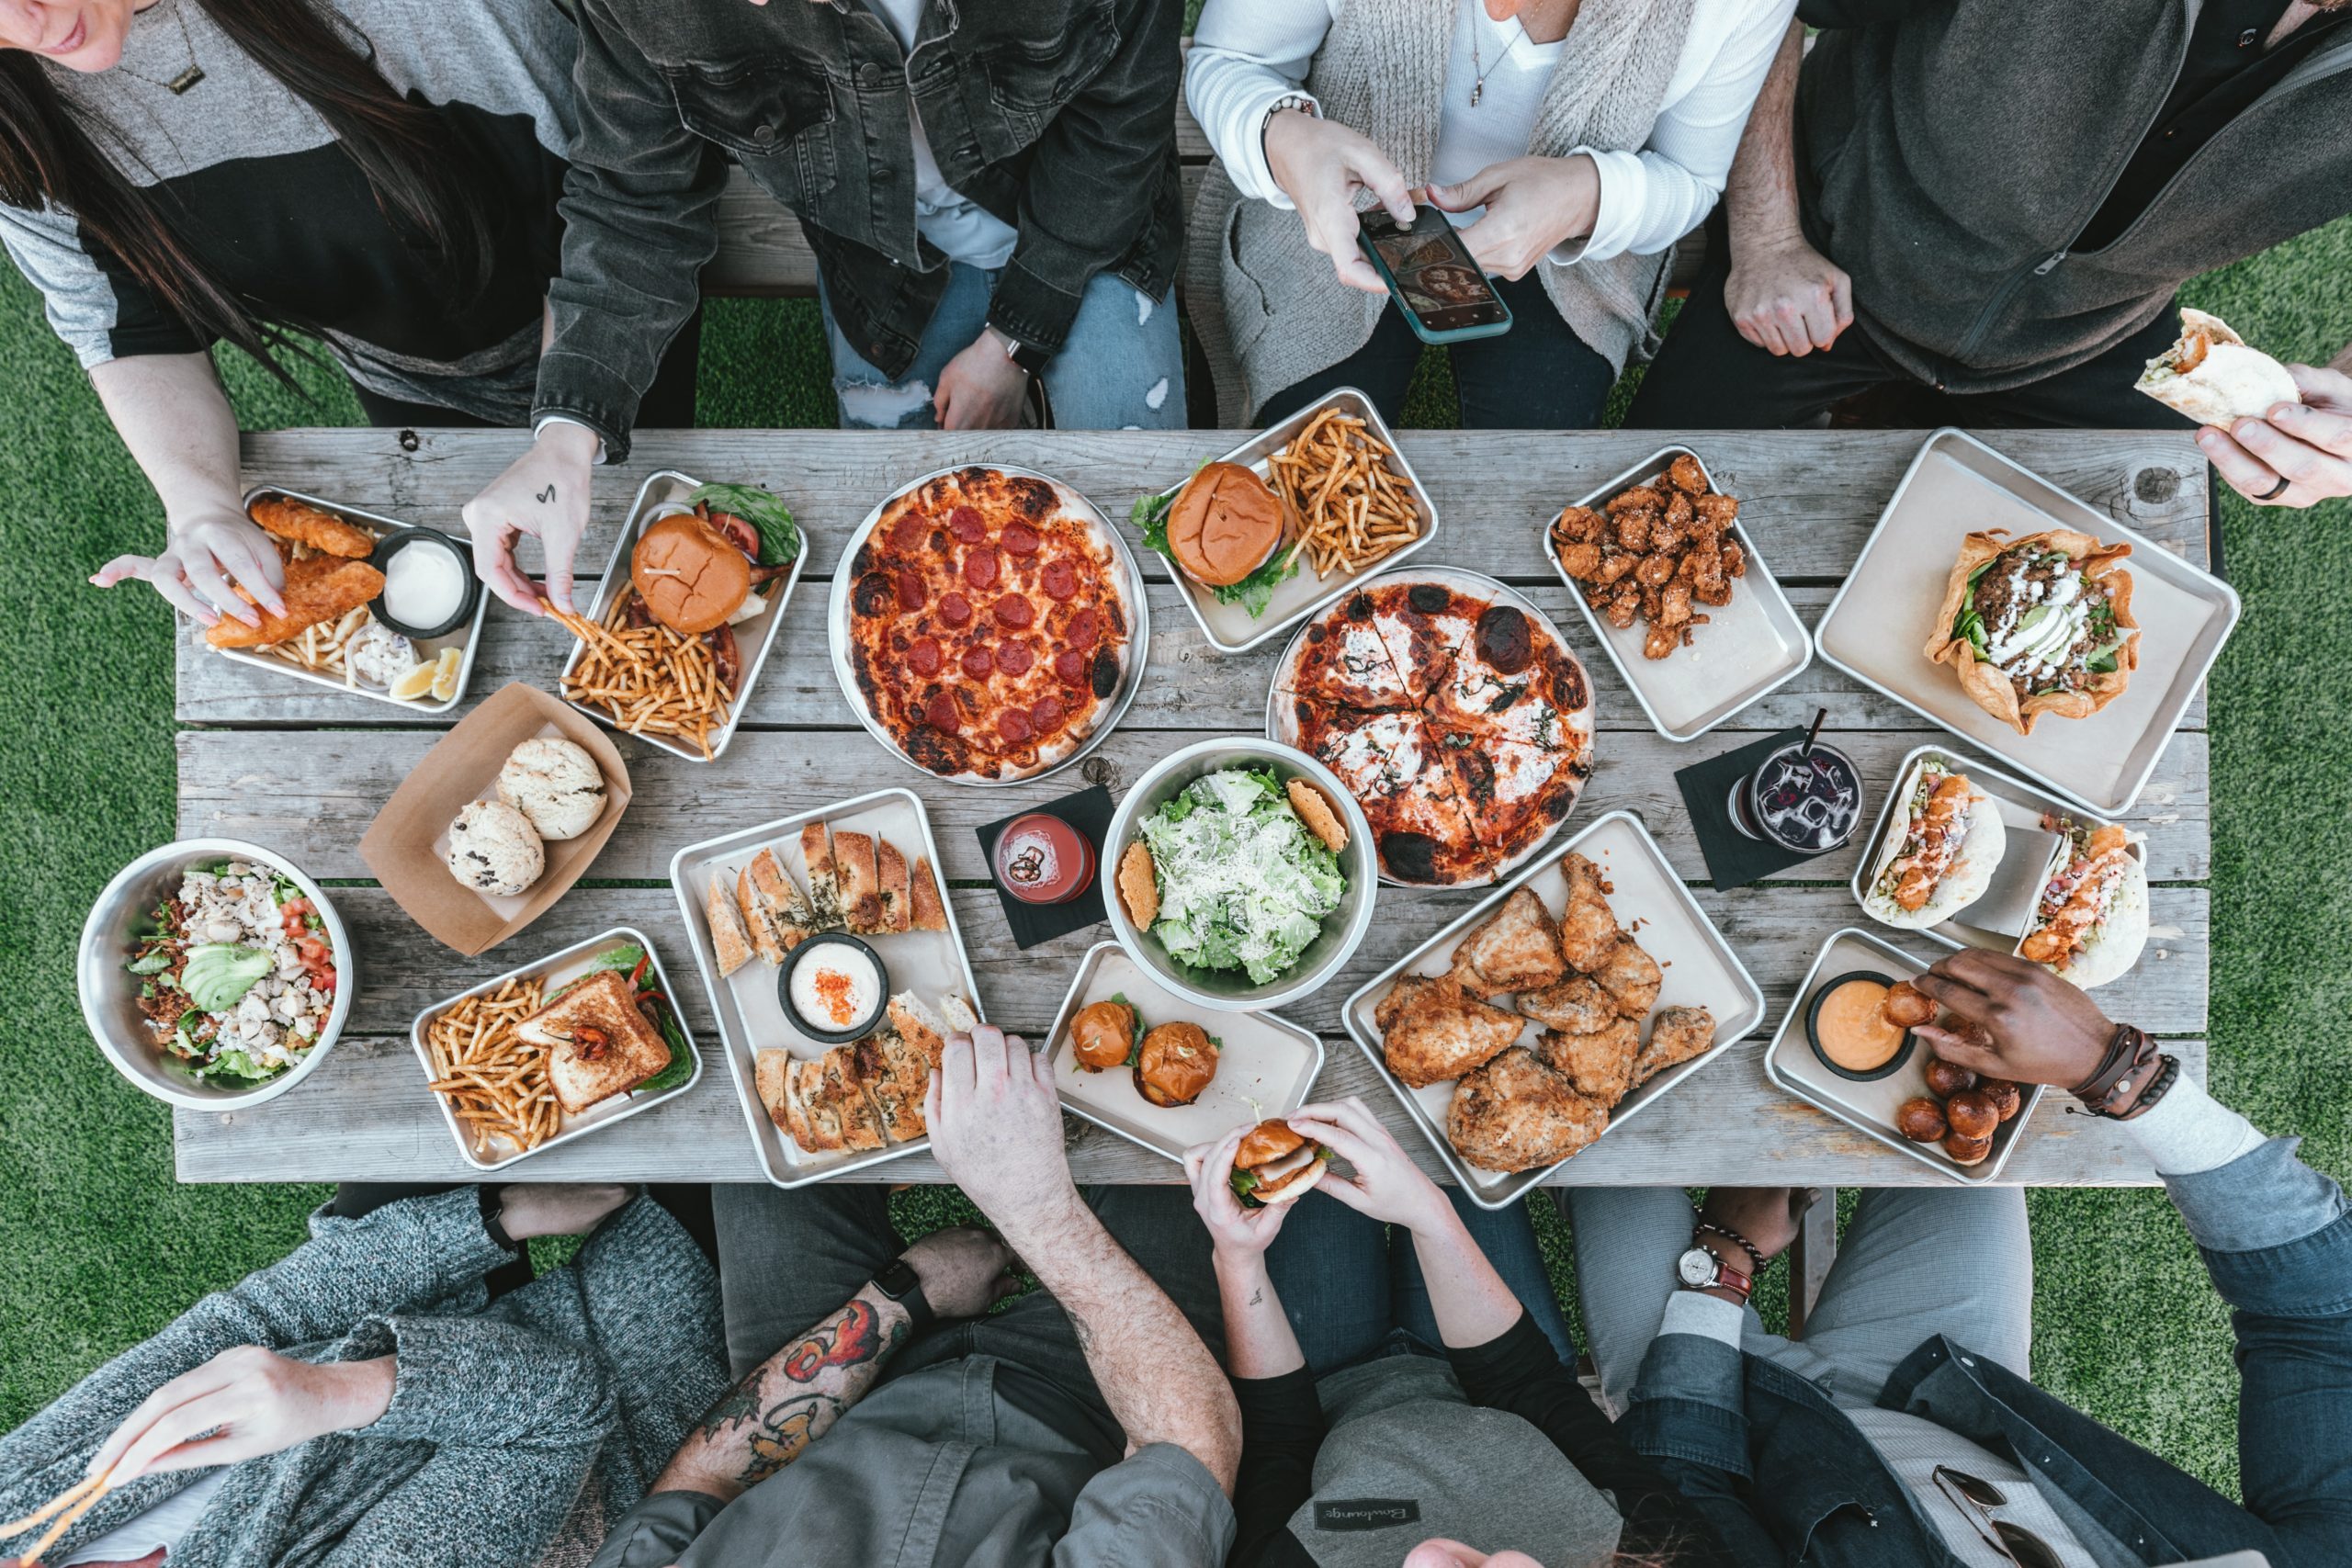 Bild von gedecktem Tisch mit deftigen Speisen und essenden Menschen